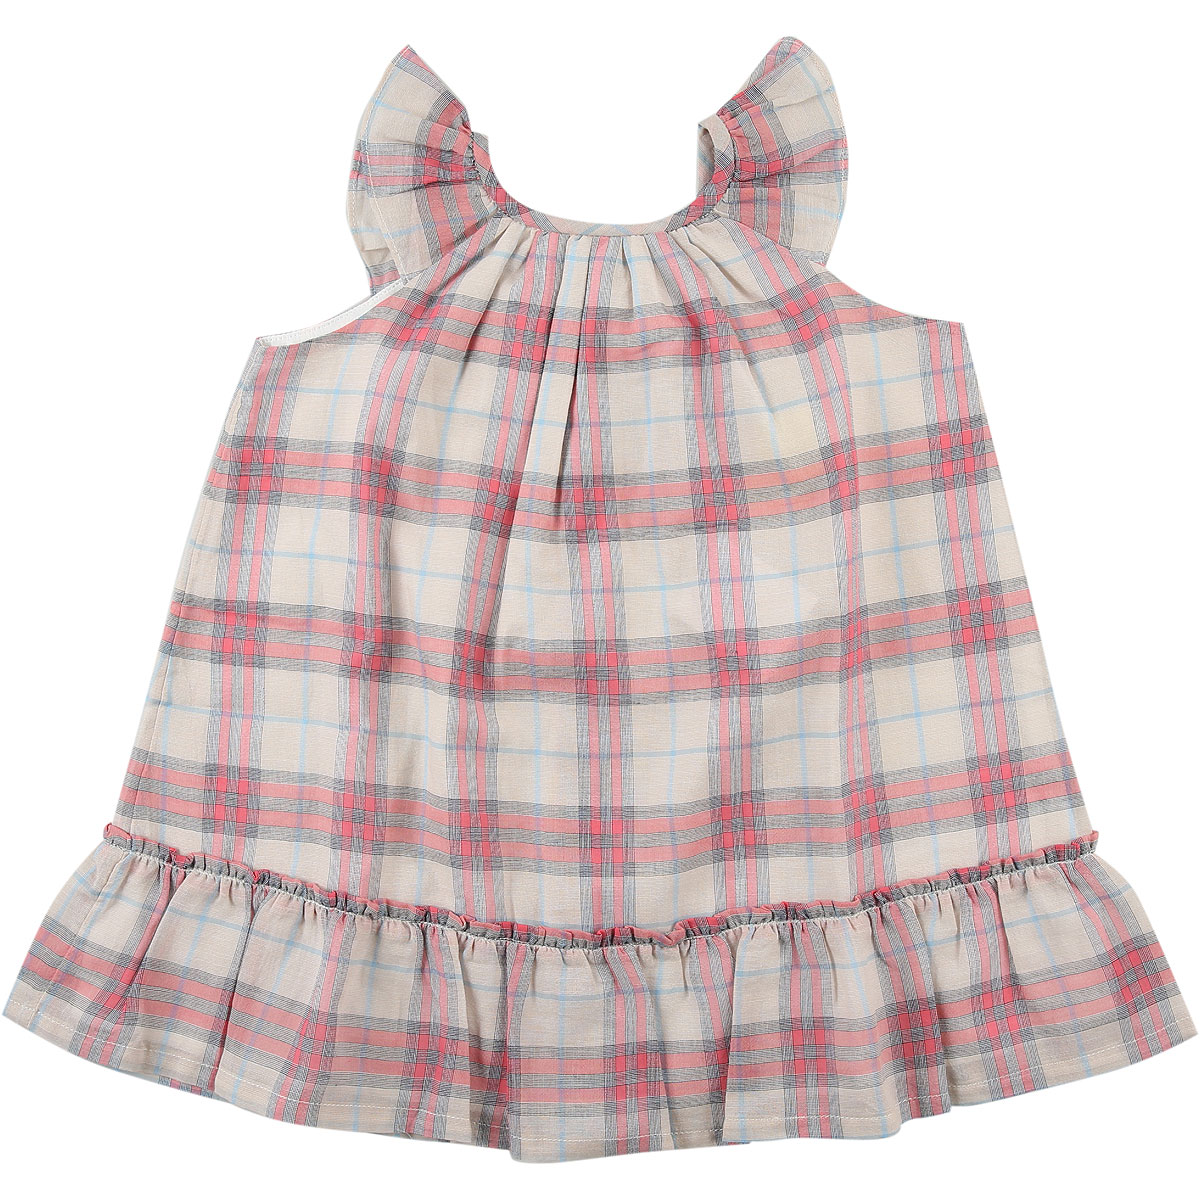 Burberry Baby Kleid für Mädchen Günstig im Outlet Sale, Pink, Baumwolle, 2017, 12M 2Y 6M 9M